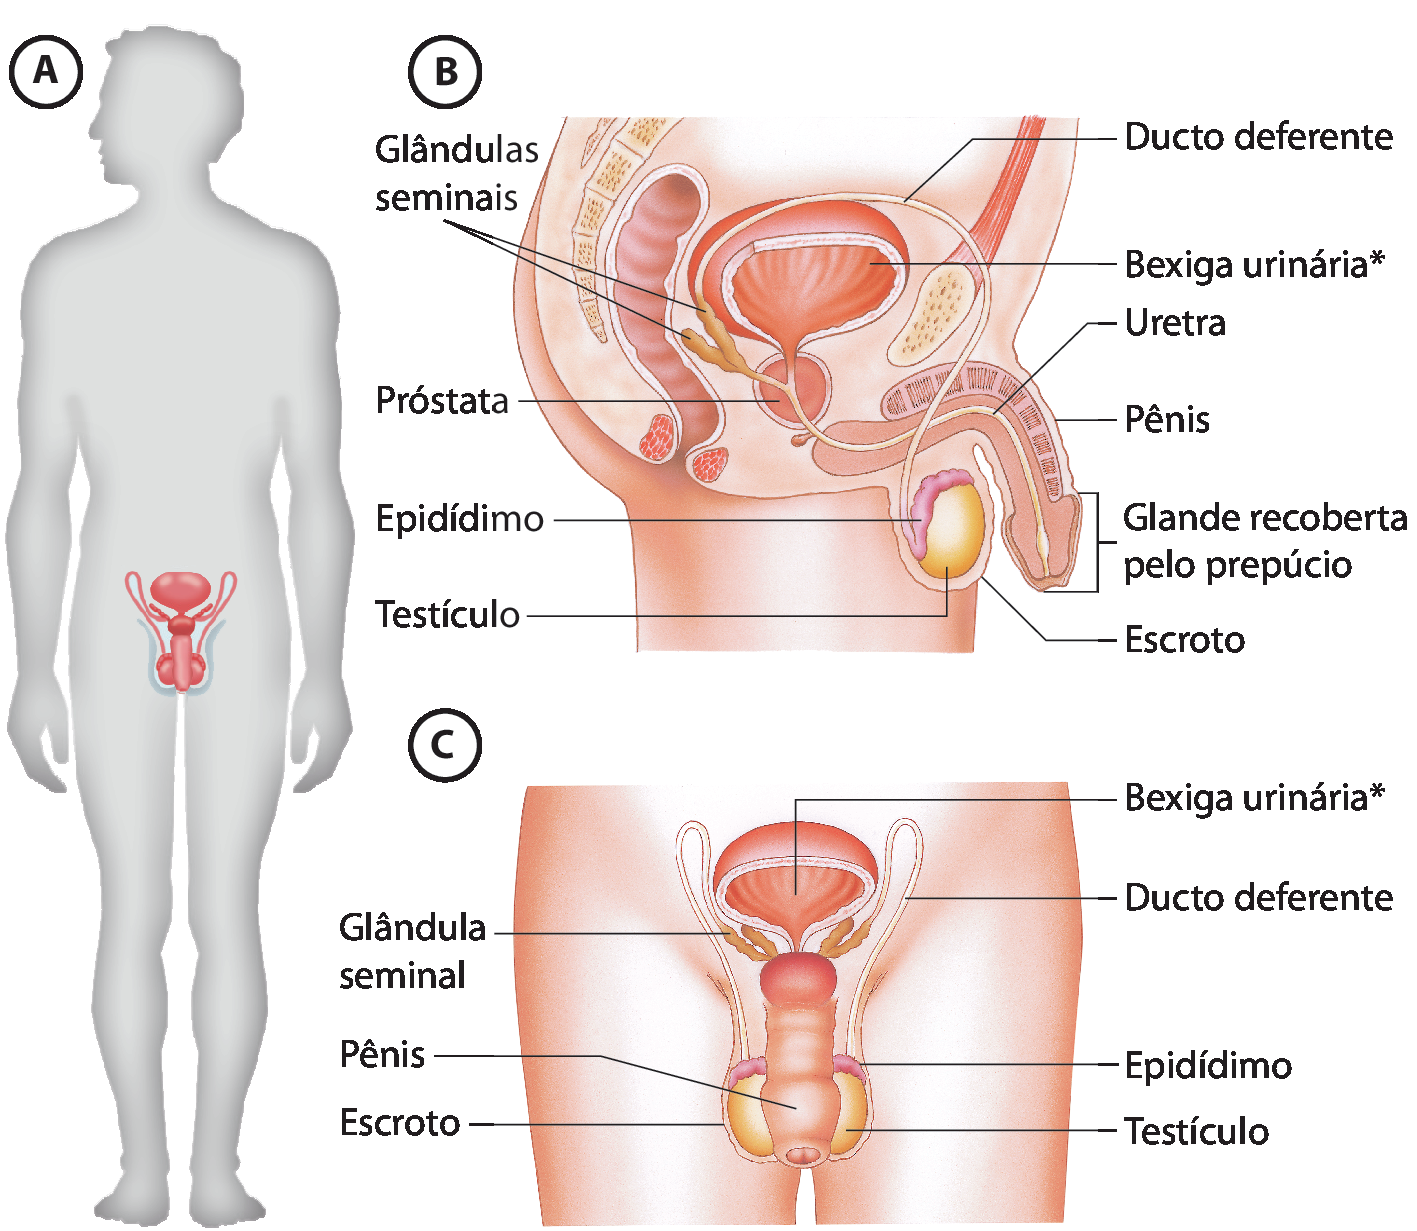 Ilustração A. Silhueta de um homem em pé e com destaque para o sistema genital. Ilustração B. Parte inferior do tronco masculino, de perfil, com indicações para: testículo, estrutura arredondada com o epidídimo, um ducto que fica acima do testículo, ambos ficam atrás do pênis, órgão com a glande recoberta pelo prepúcio na extremidade. Ao redor do testículo há uma camada chamada escroto. No pênis há a uretra, um tubo fino que segue para o interior, indo até uma forma arredondada que é a próstata e se ligando à bexiga urinária, na parte superior e se ligando às glândulas seminais que ficam atrás da bexiga. Do escroto parte um fino tubo que se liga à parte superior das glândulas seminais, o ducto deferente. Ilustração C. Parte inferior do tronco masculino, de frente, com indicações para: bexiga urinária, ducto deferente, epidídimo, testículo, glândula seminal, pênis, escroto.